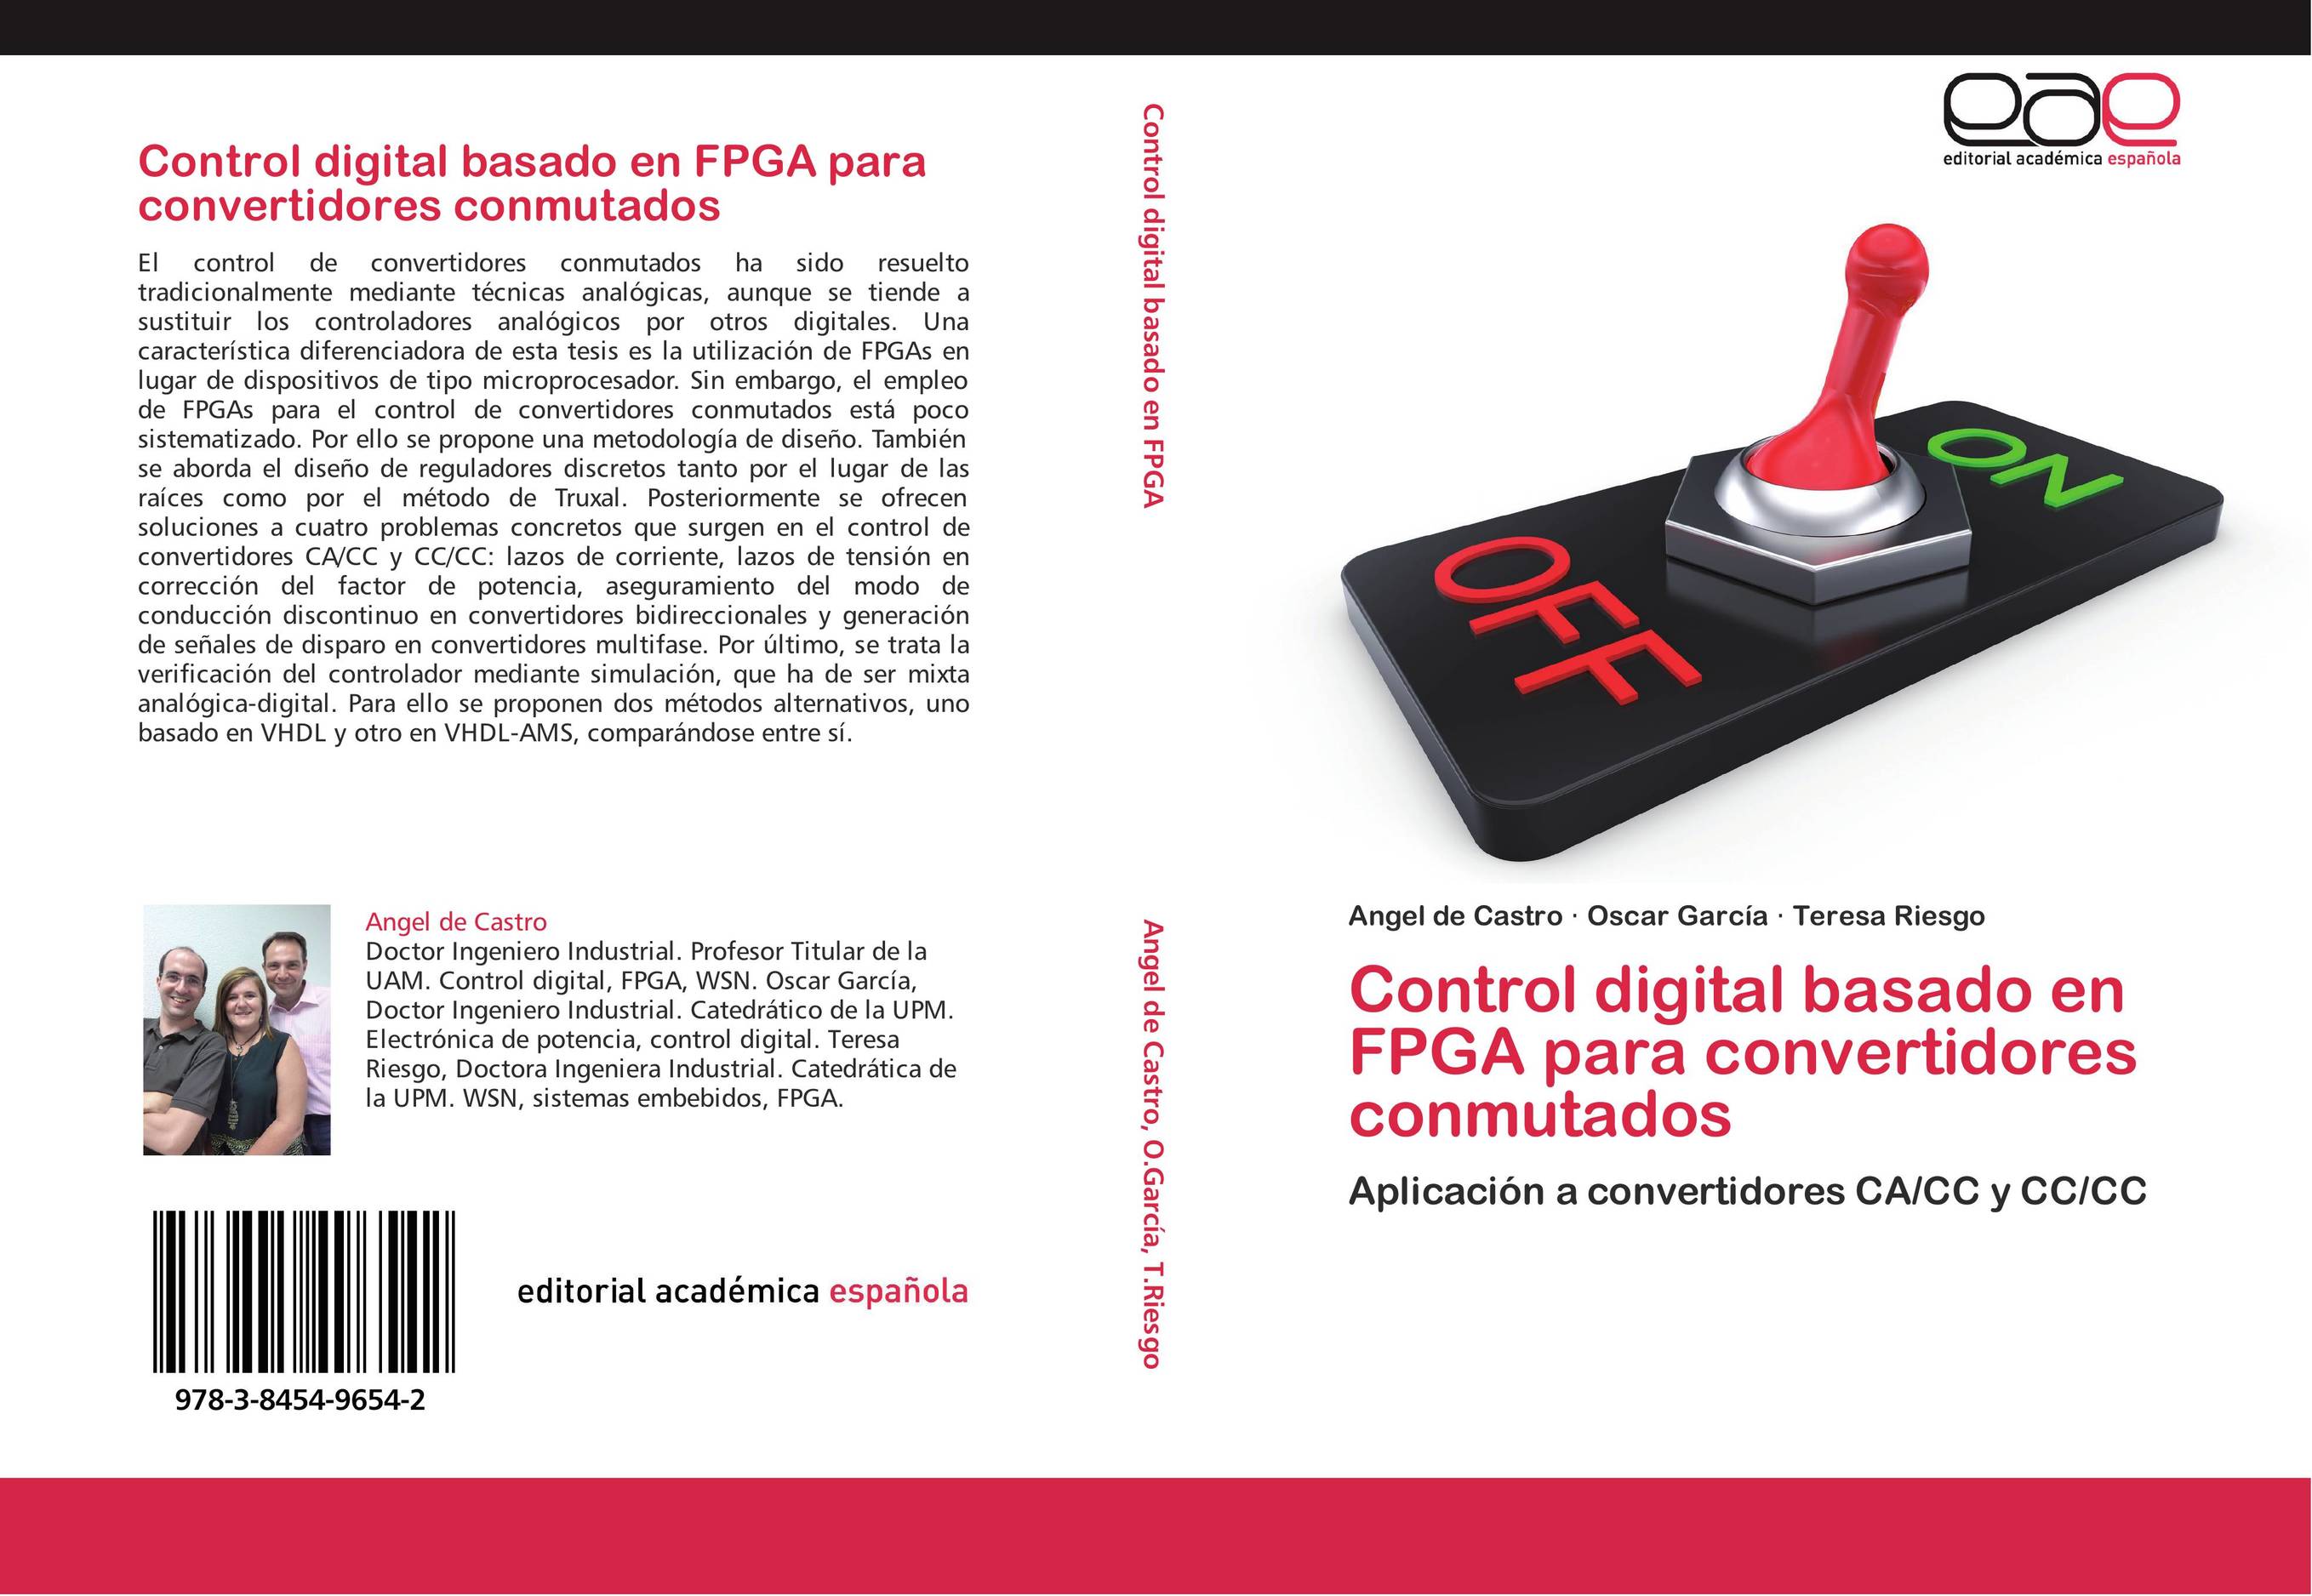 Control digital basado en FPGA para convertidores conmutados